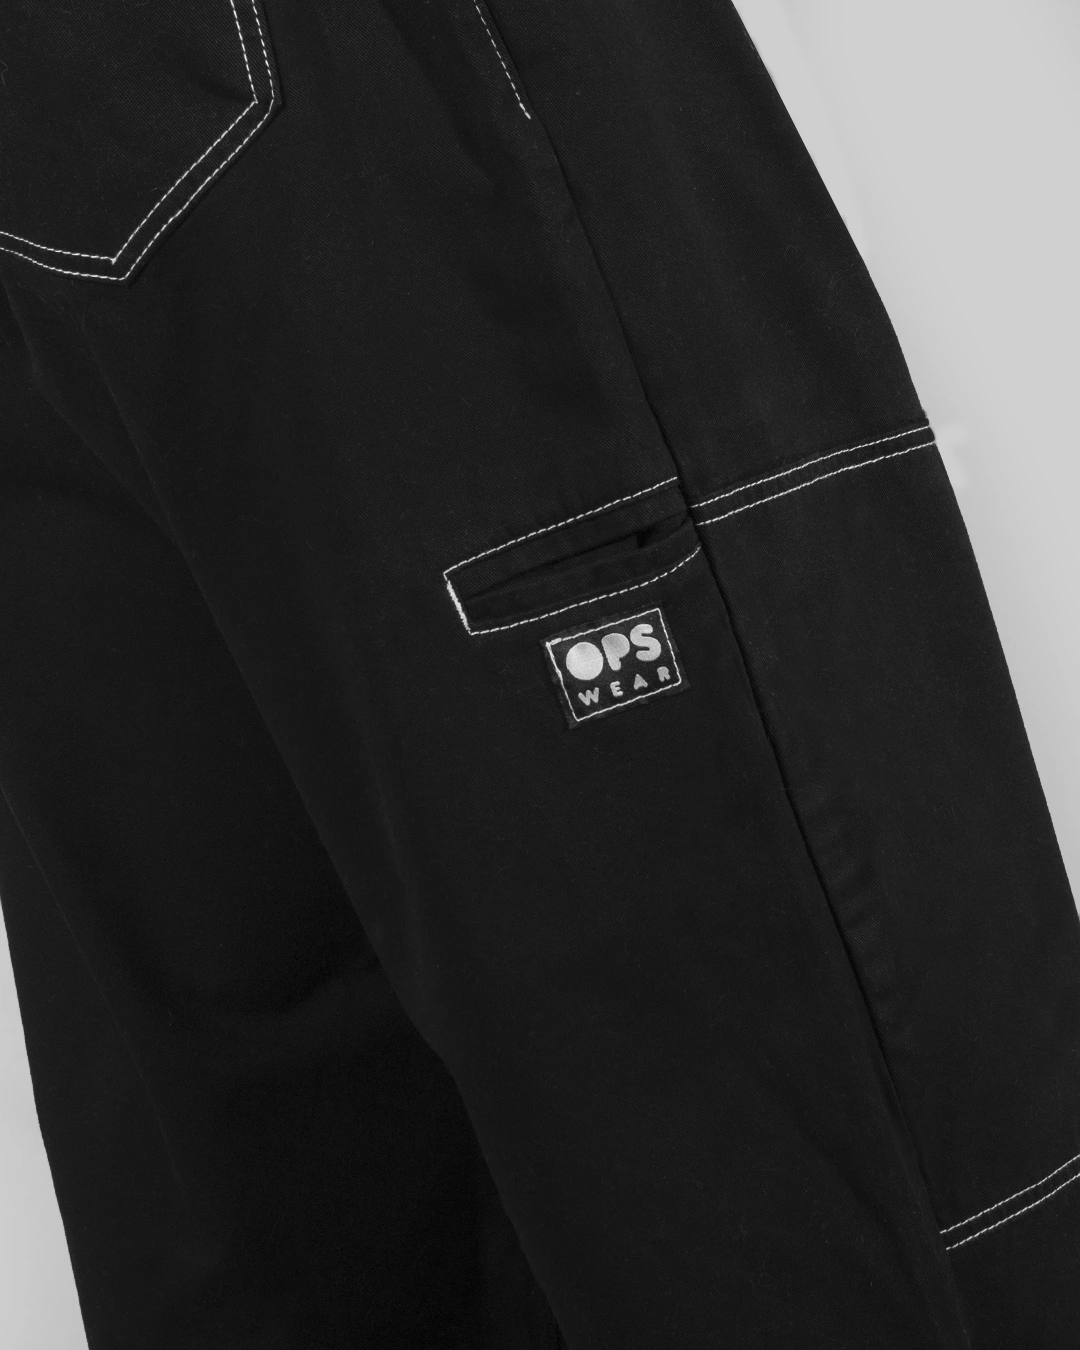 pantalón negro detalle porta llave cintura elastica cordon costuras expuestas invertidas bolsillos doble rodilla